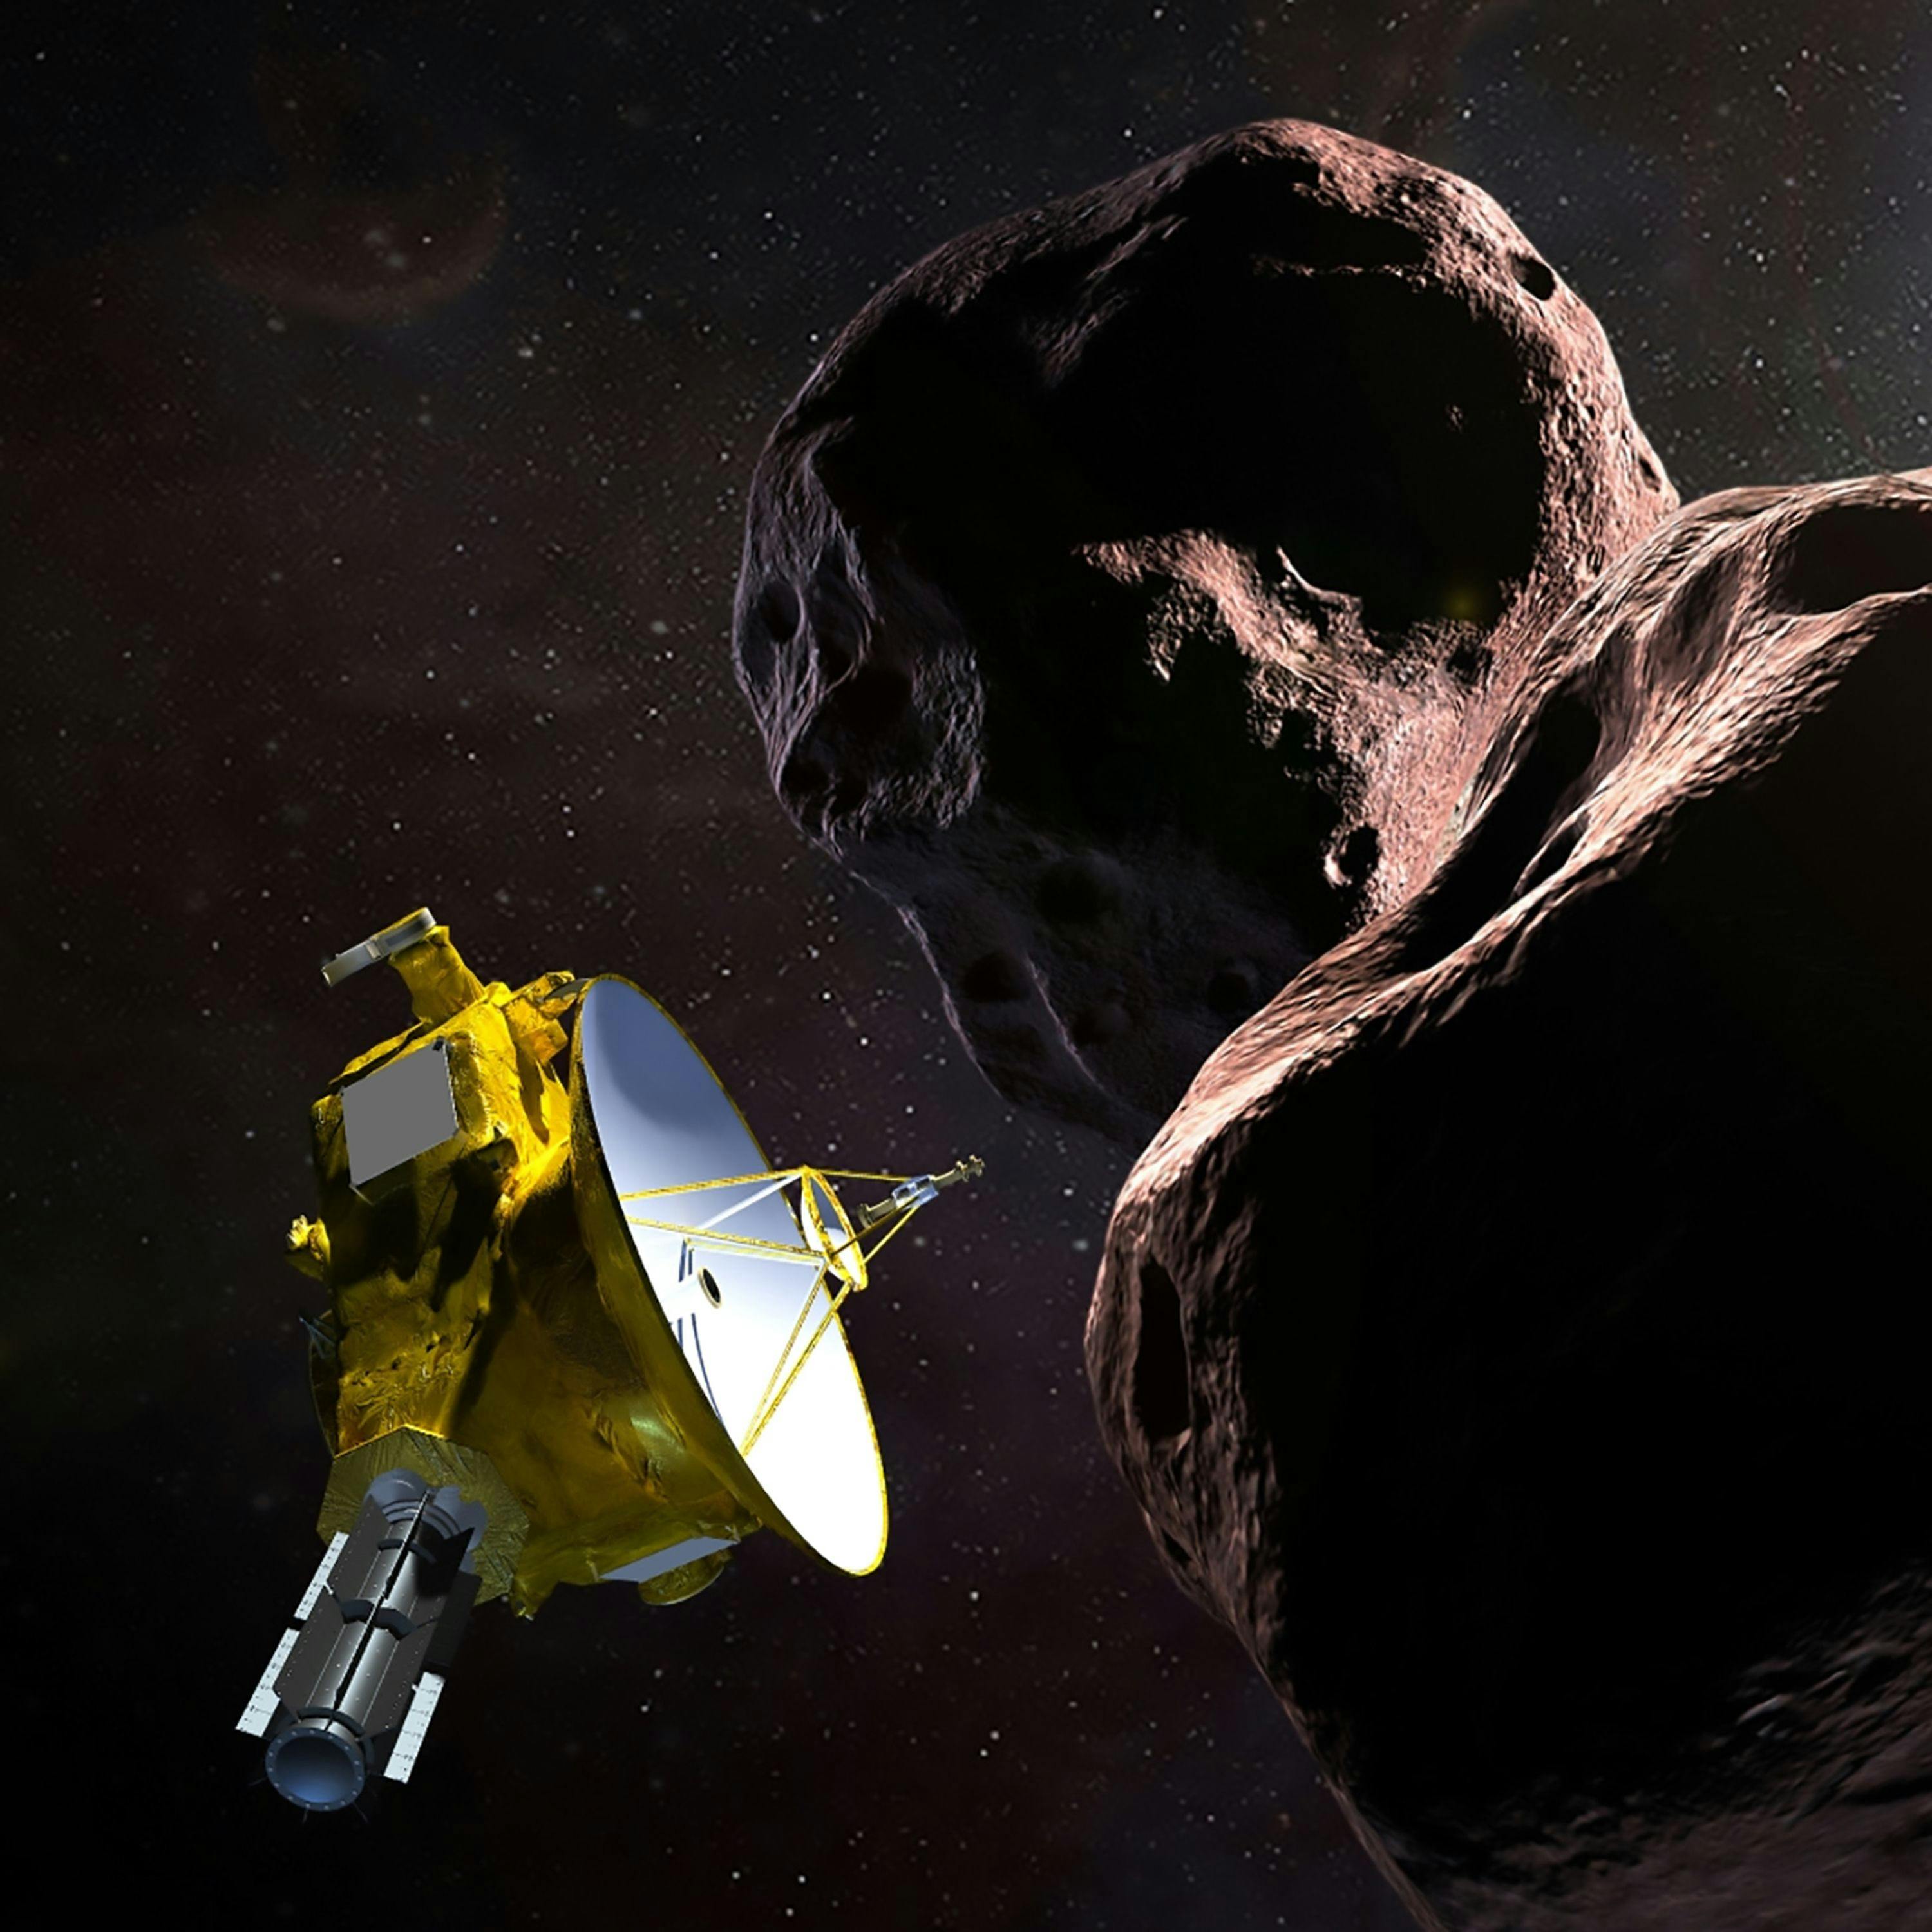 New Horizons and event horizons